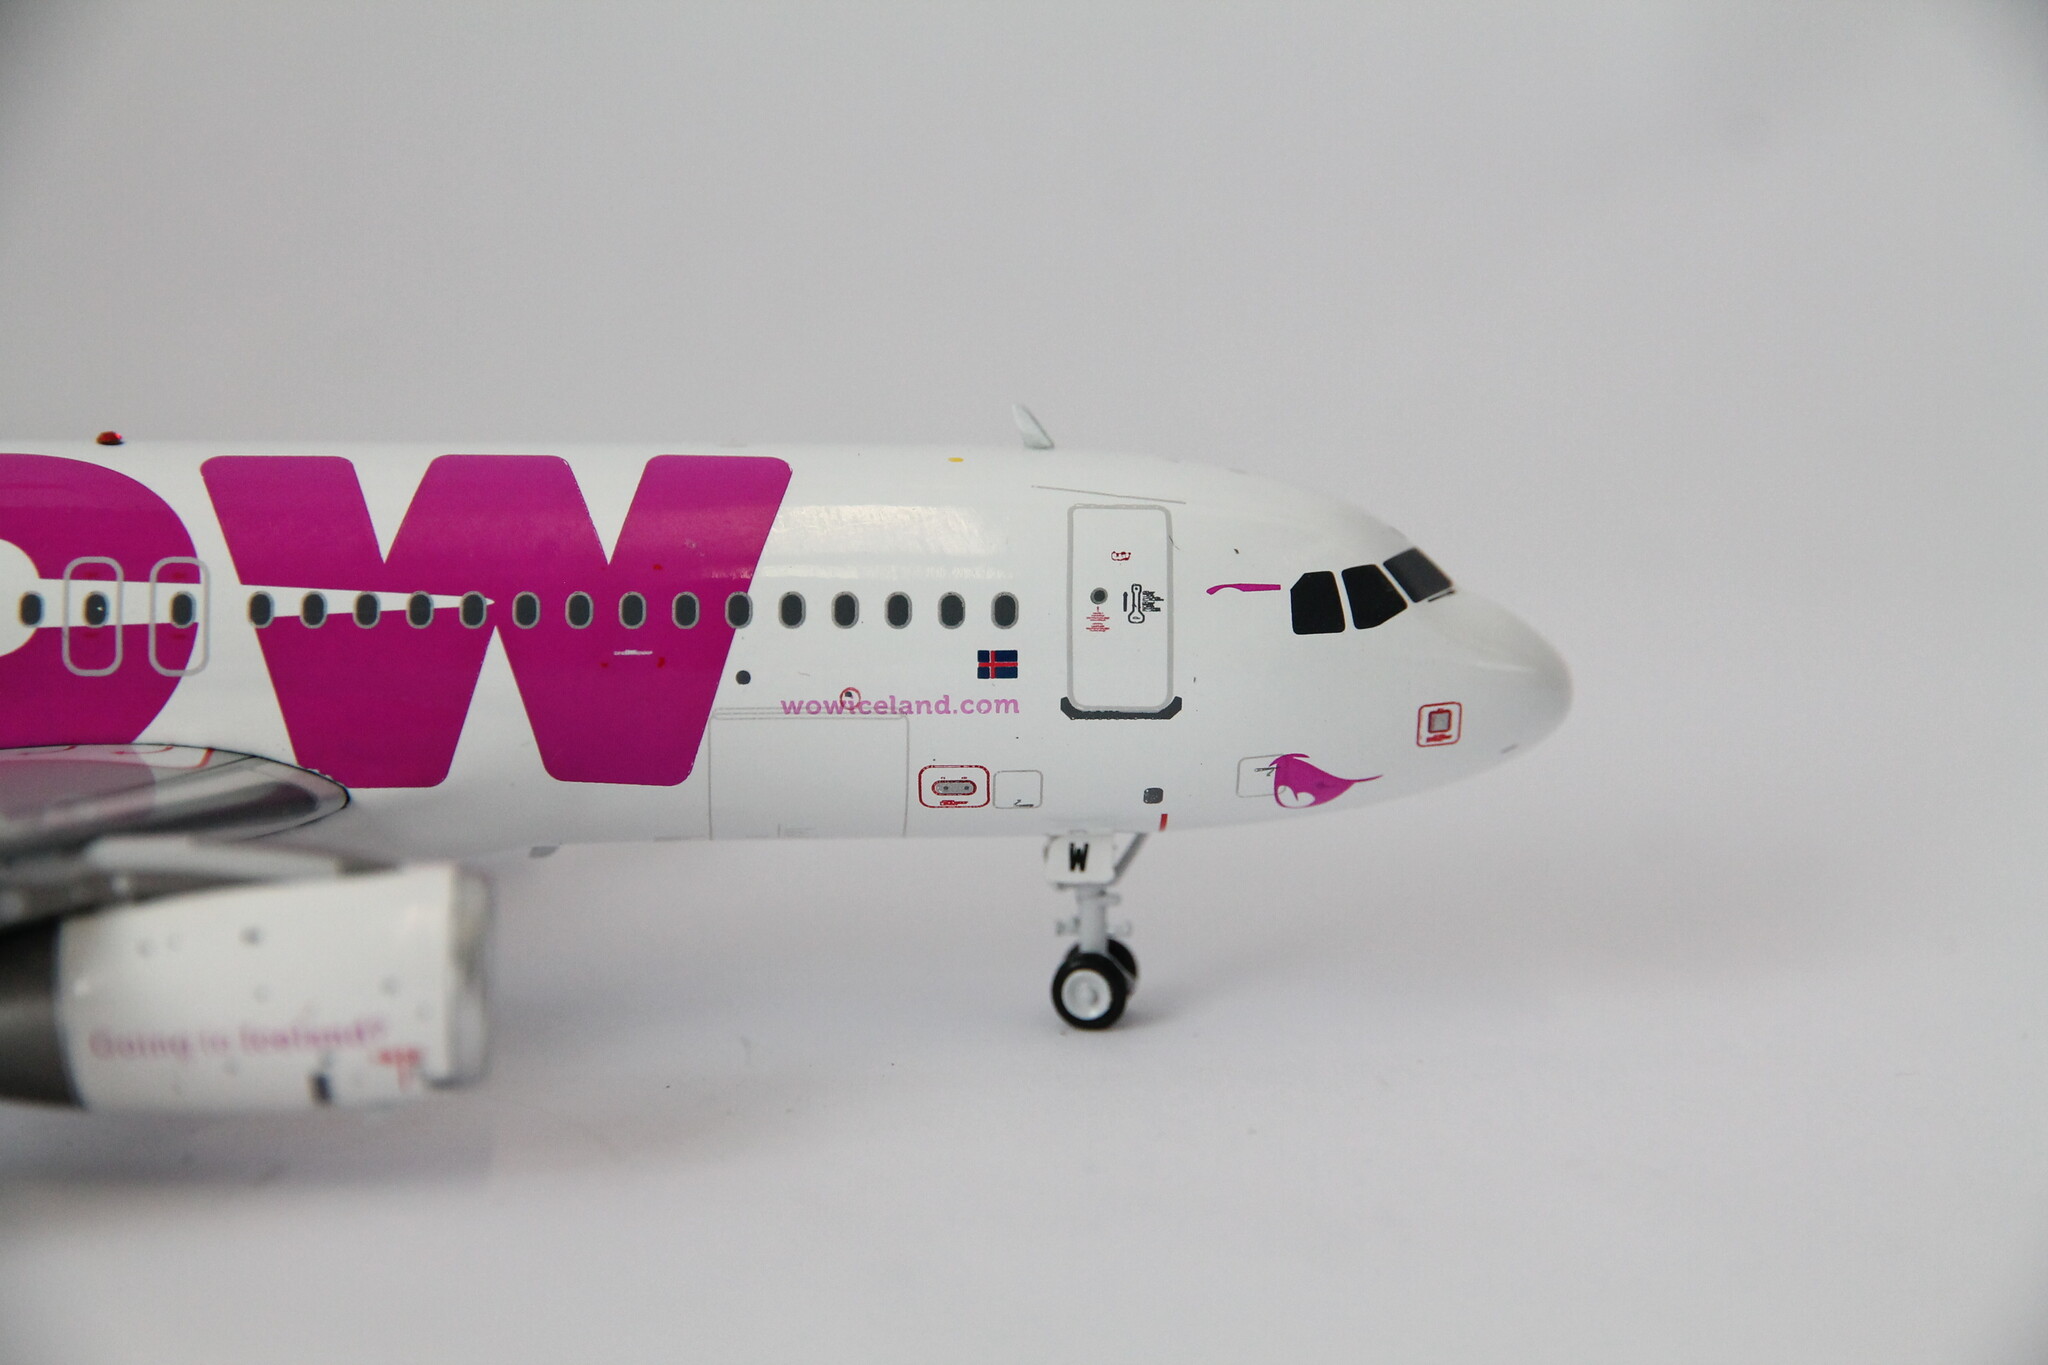 JFox 1:200 WOW Air A320-232